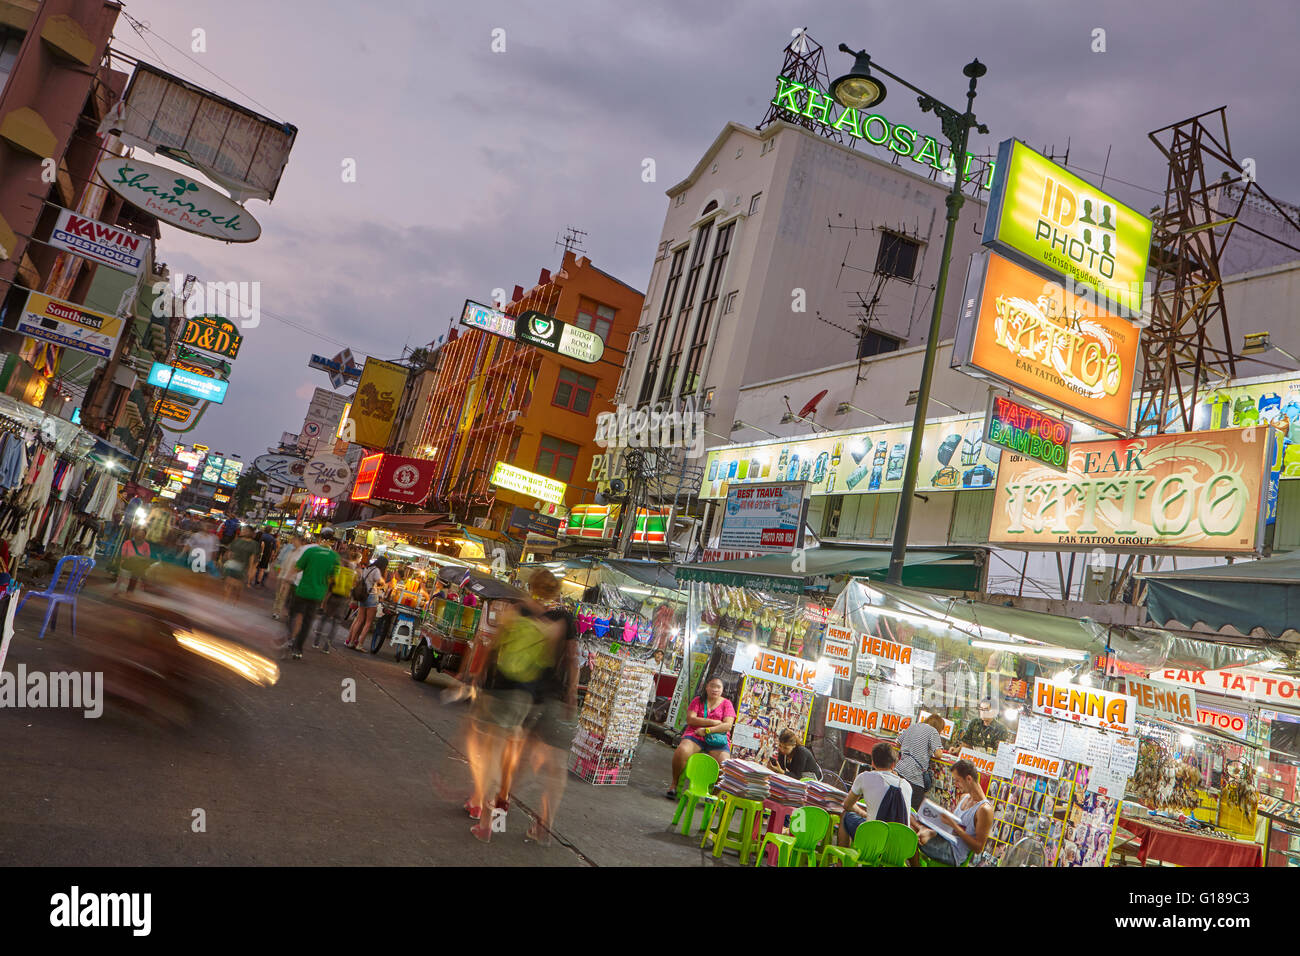 Khaosan Road at night, Bangkok, Thailand Stock Photo